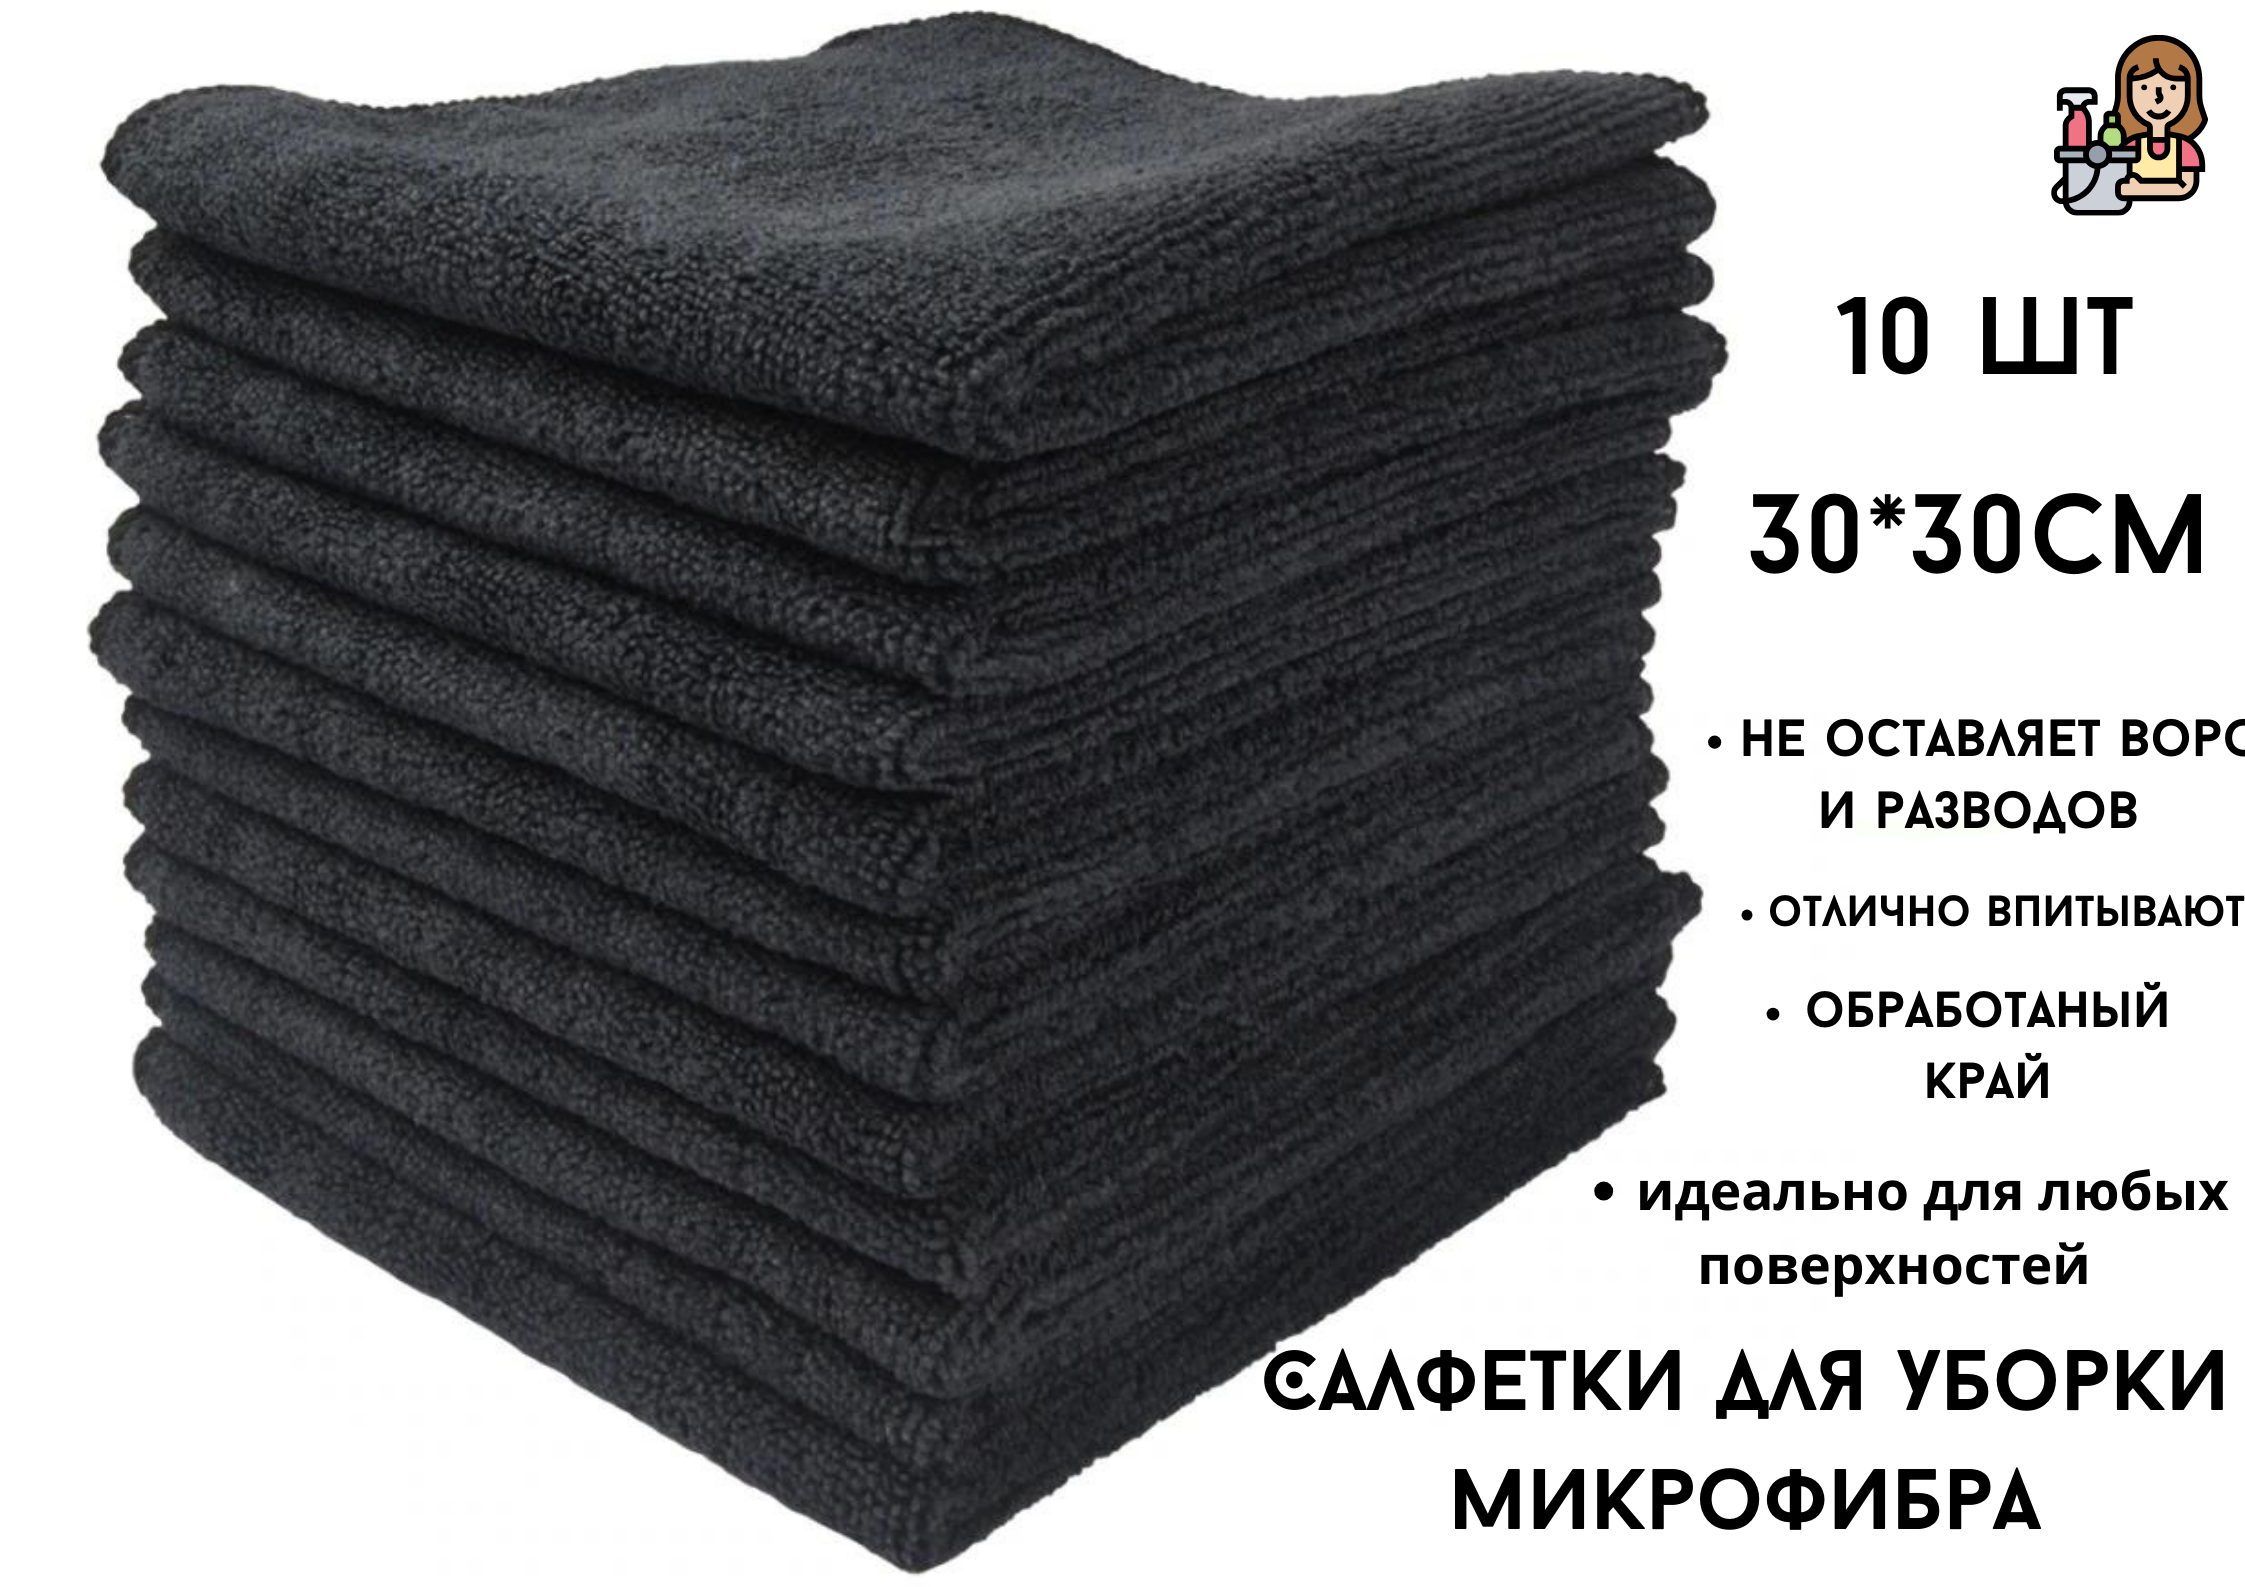 Салфетки для уборки БытСервис микрофибра черные 30 х 30 см, 10 шт